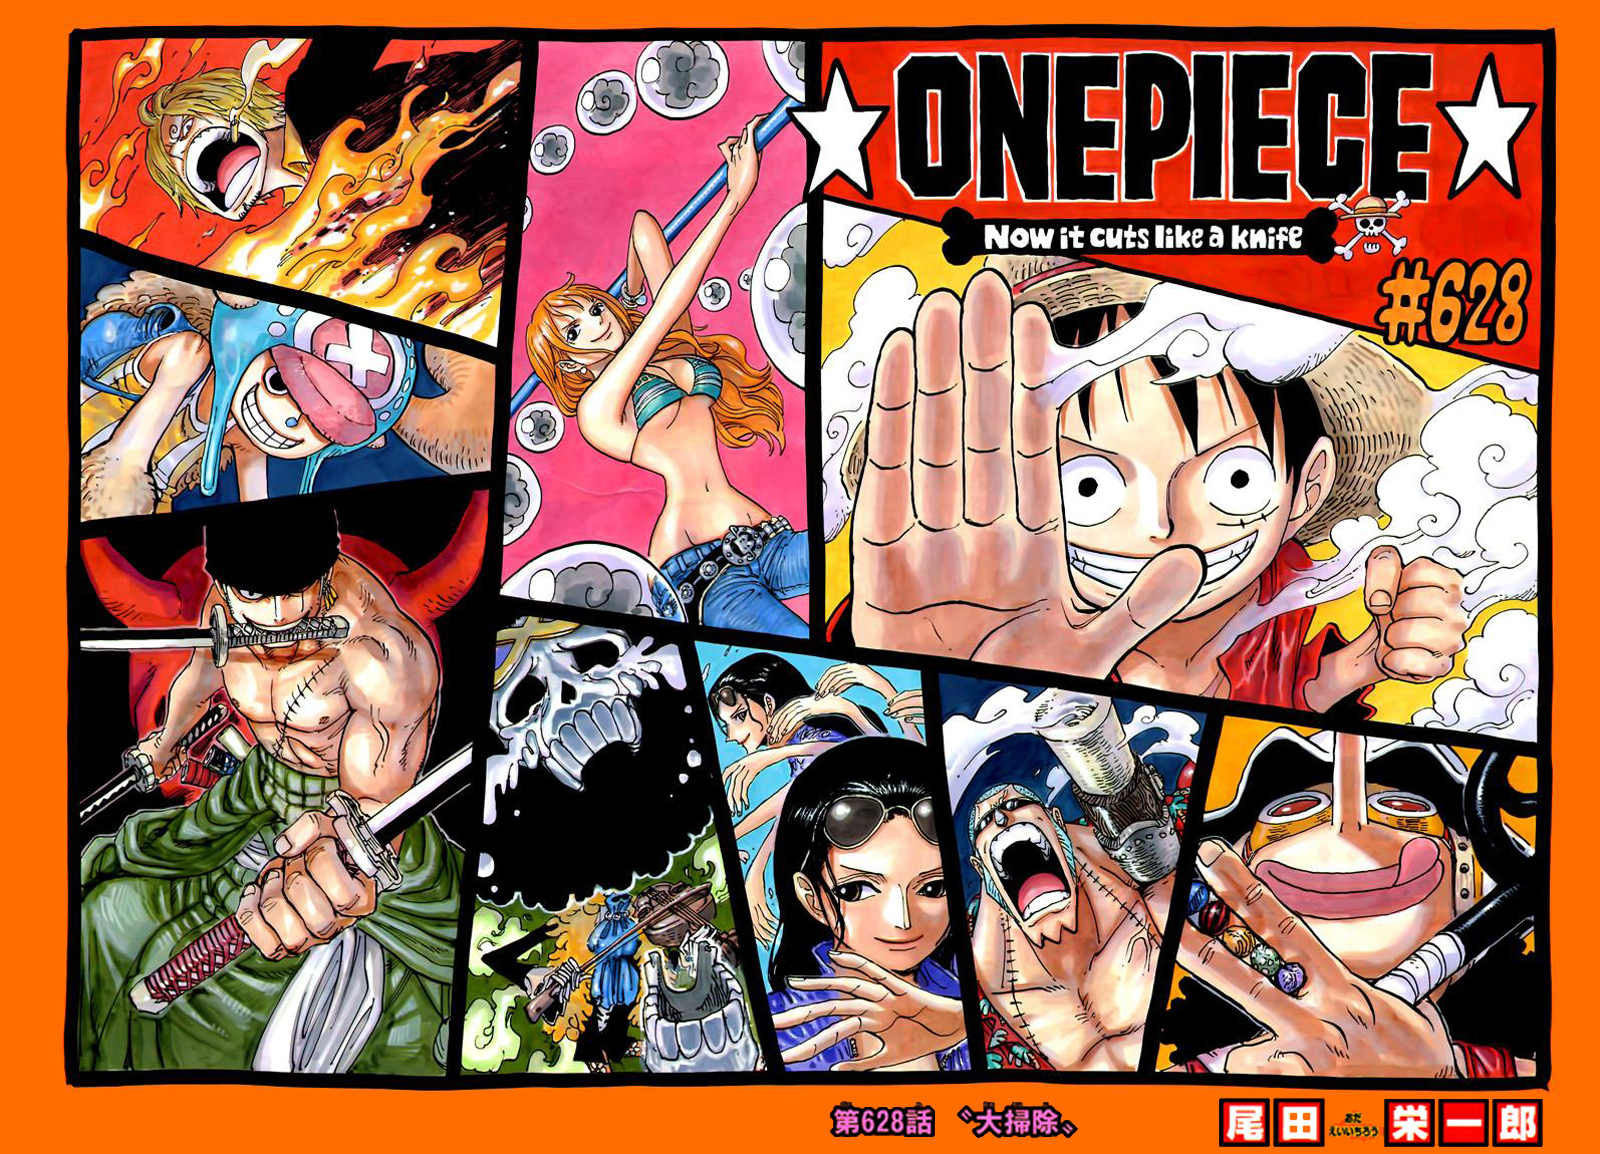 Kagurabachi : après 1 seul chapitre, ce manga déjà présenté comme le  nouveau One Piece